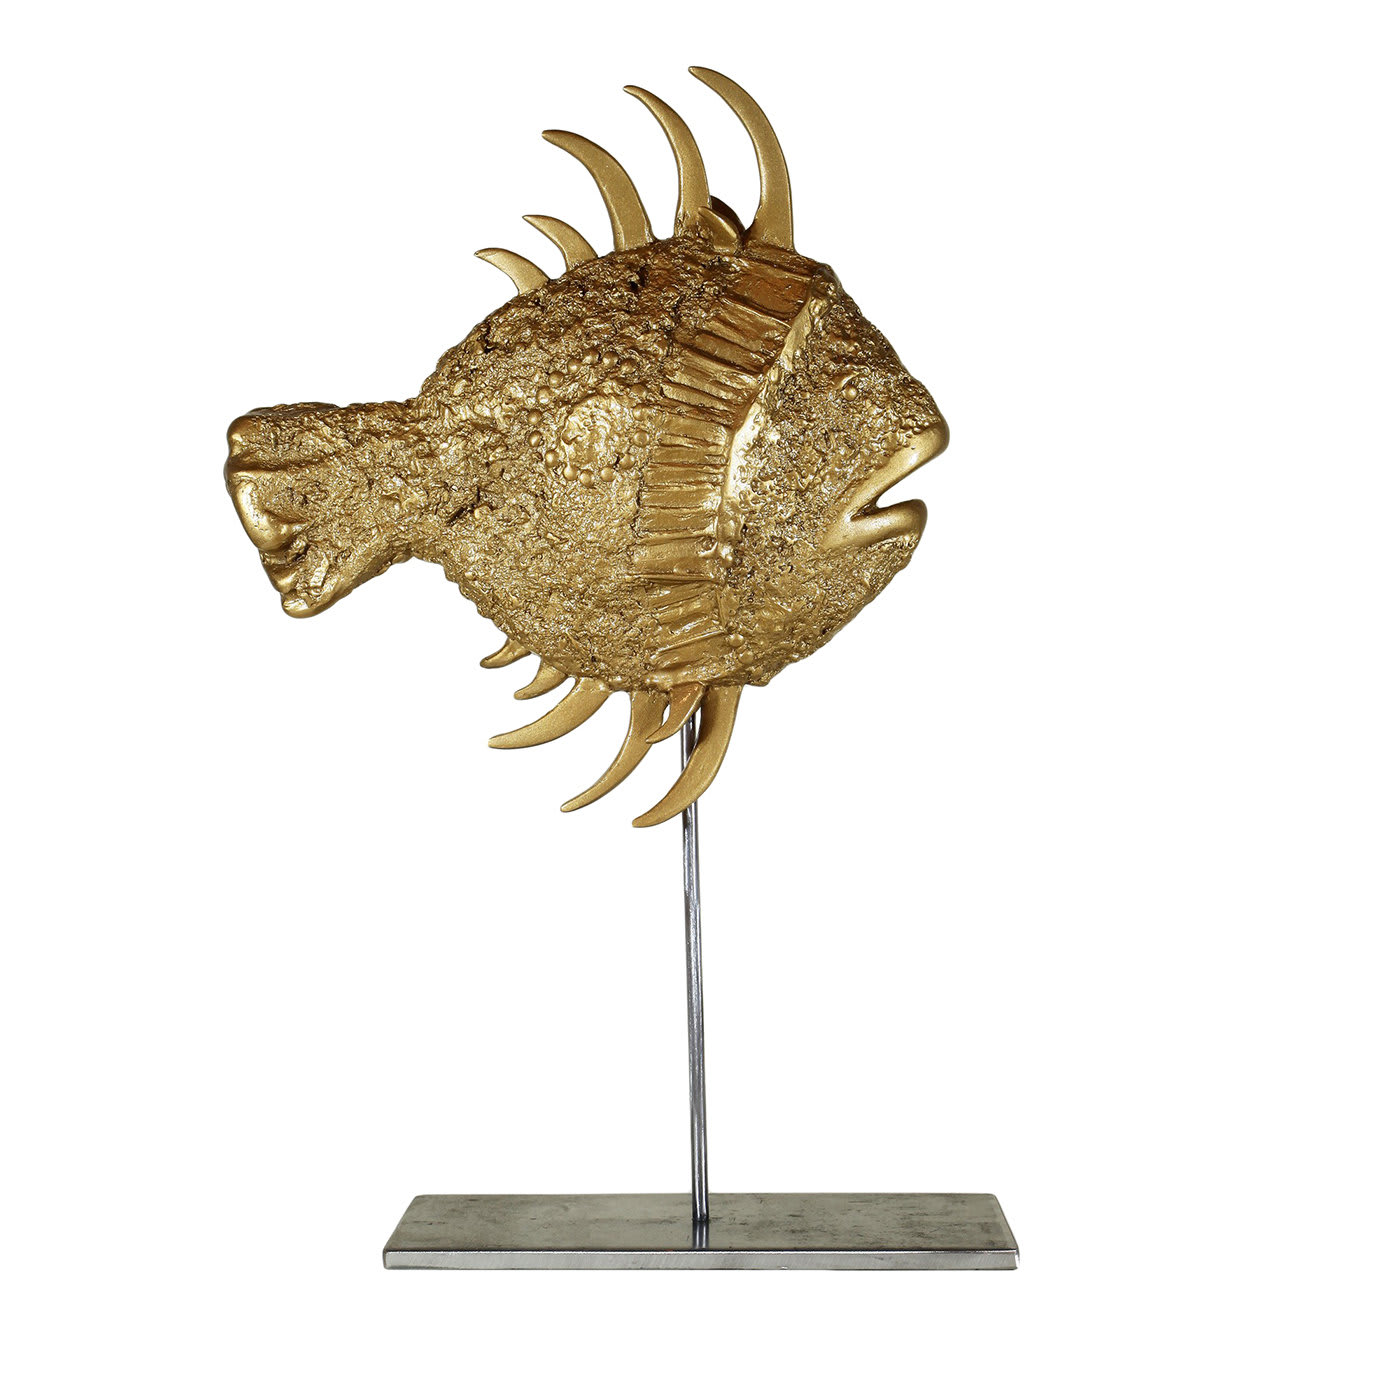 San Pietro Large Gold Fish Sculpture - Atelier Pietrantonio